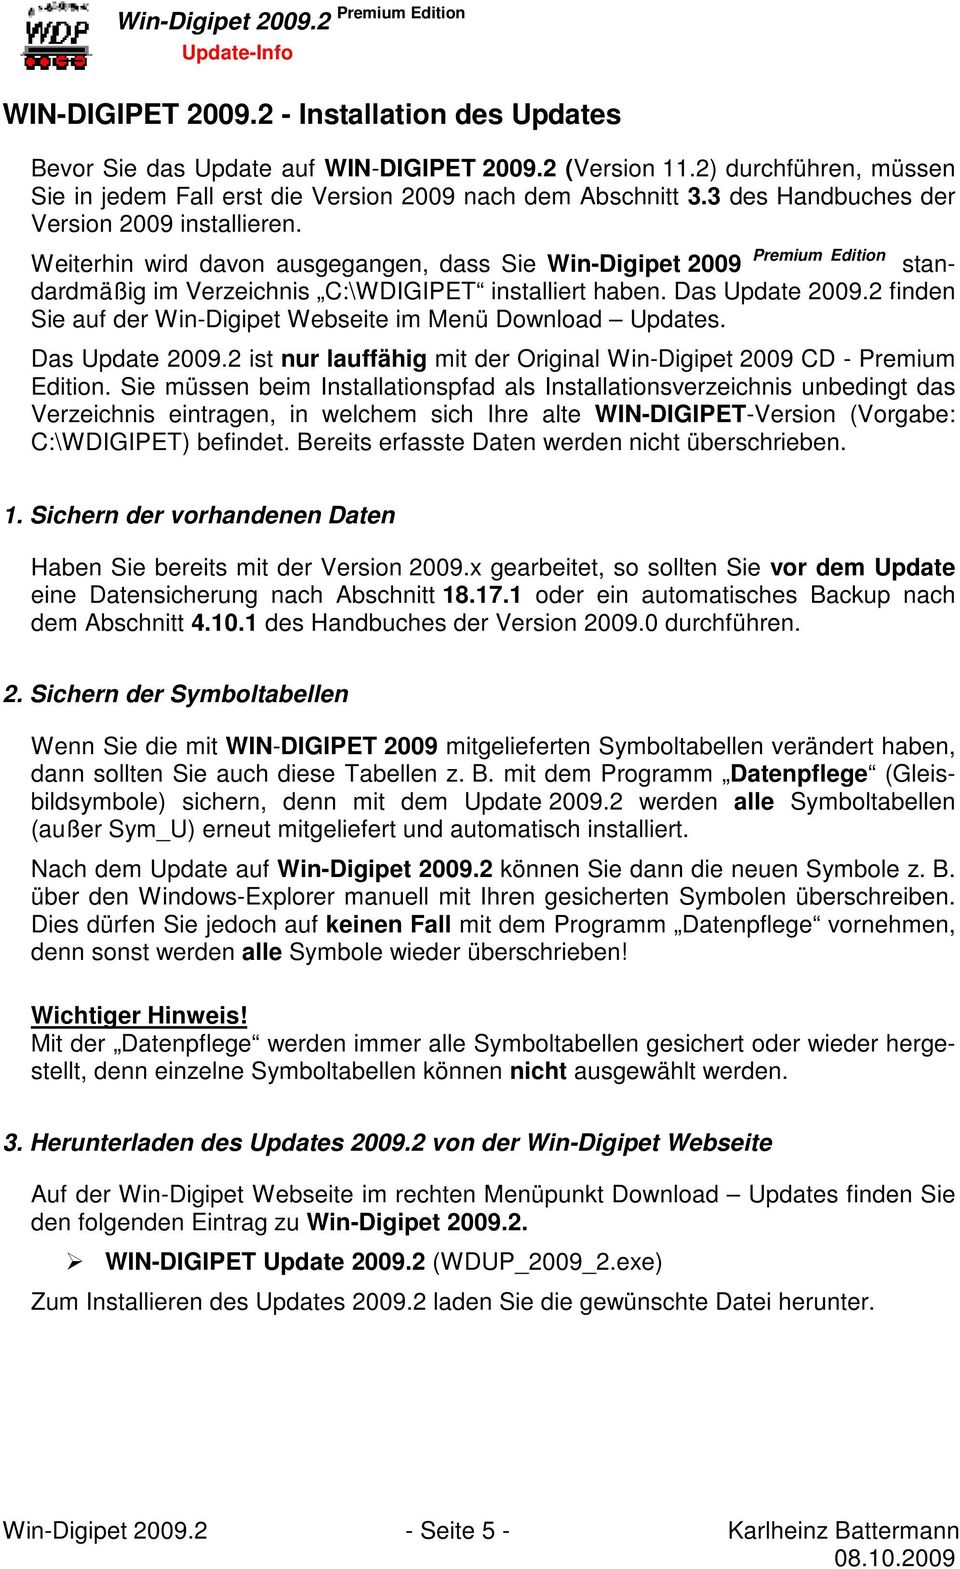 Das Update 2009.2 finden Sie auf der Win-Digipet Webseite im Menü Download Updates. Das Update 2009.2 ist nur lauffähig mit der Original Win-Digipet 2009 CD - Premium Edition.